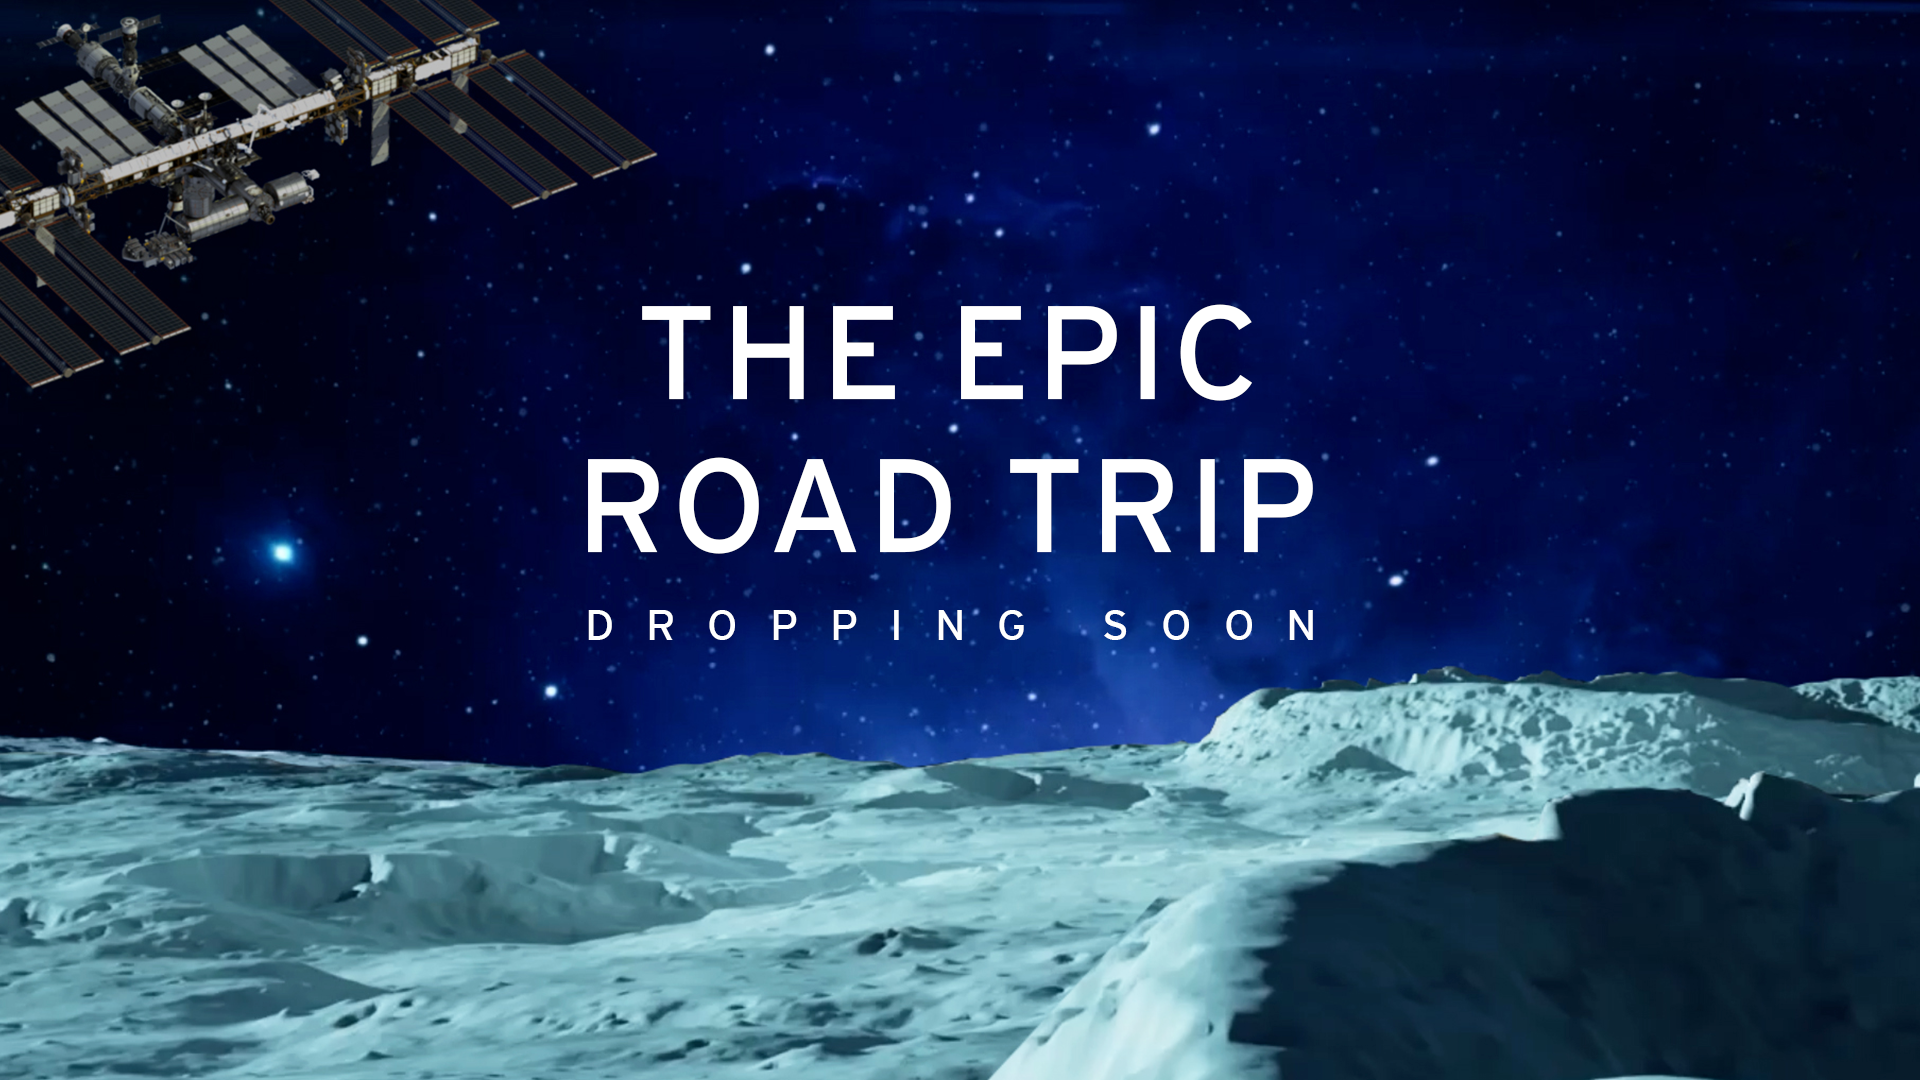 Il teaser del progetto “The epic road trip”di Lamborghini negli NFT